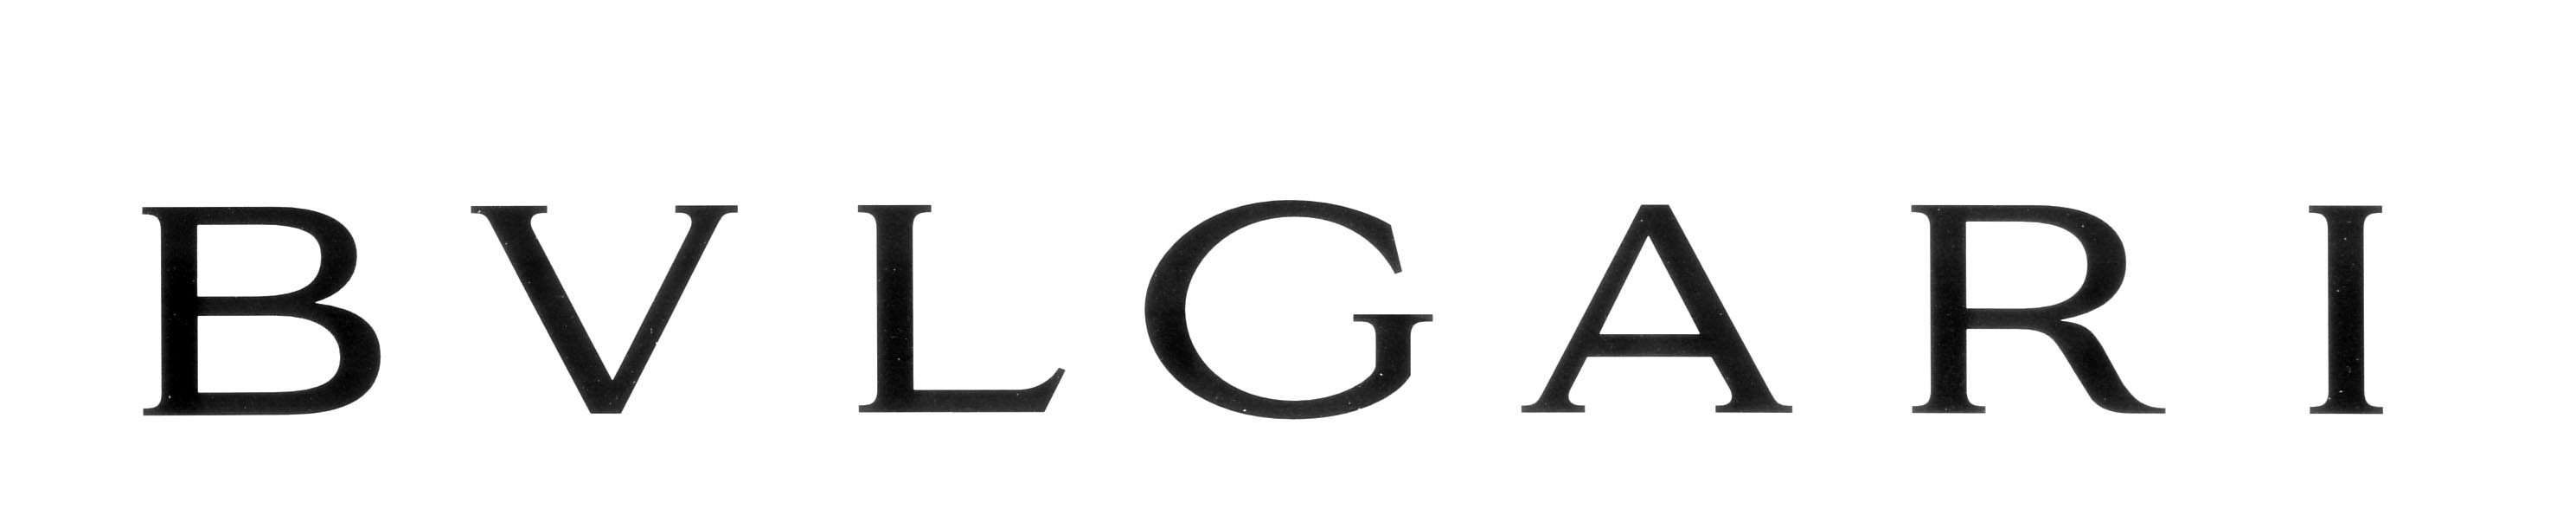 bvlgari logo font